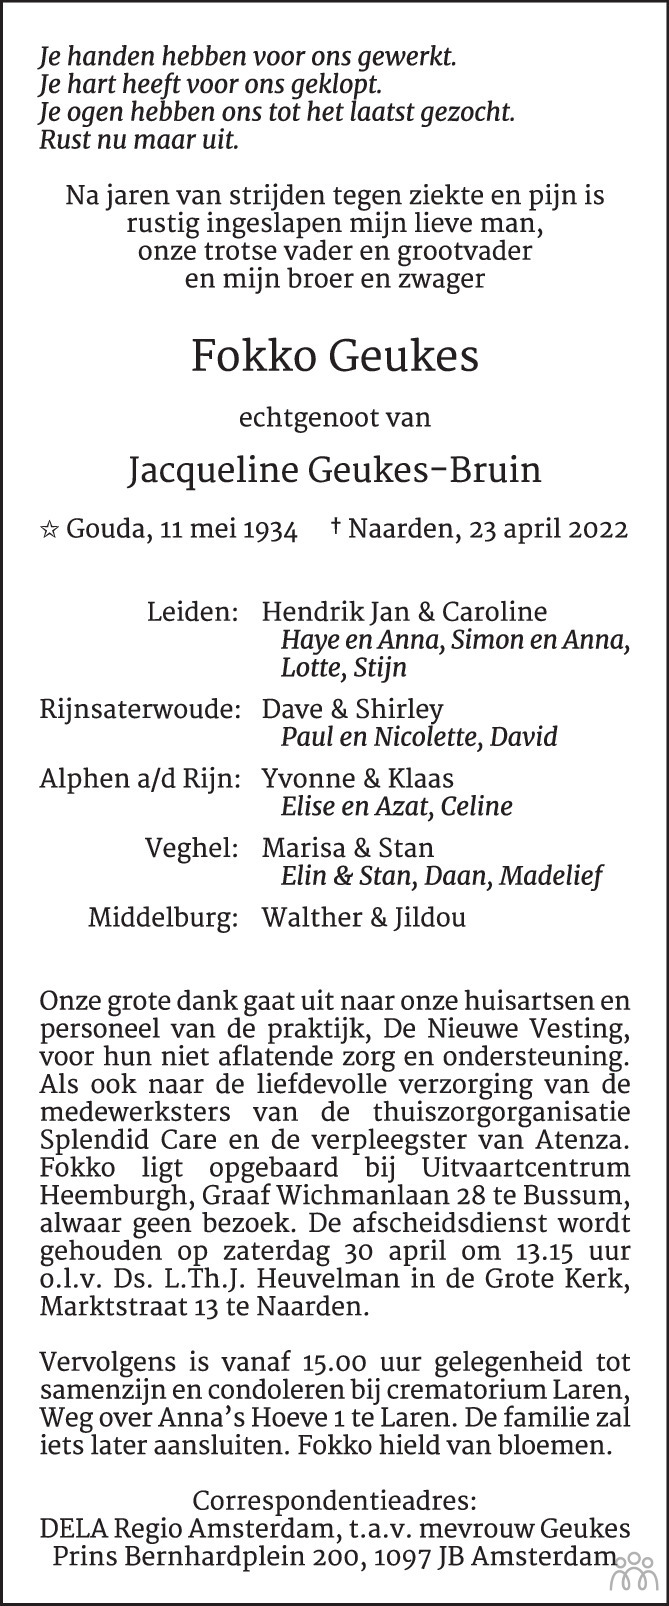 Overlijdensbericht van Fokko Geukes in AD Algemeen Dagblad